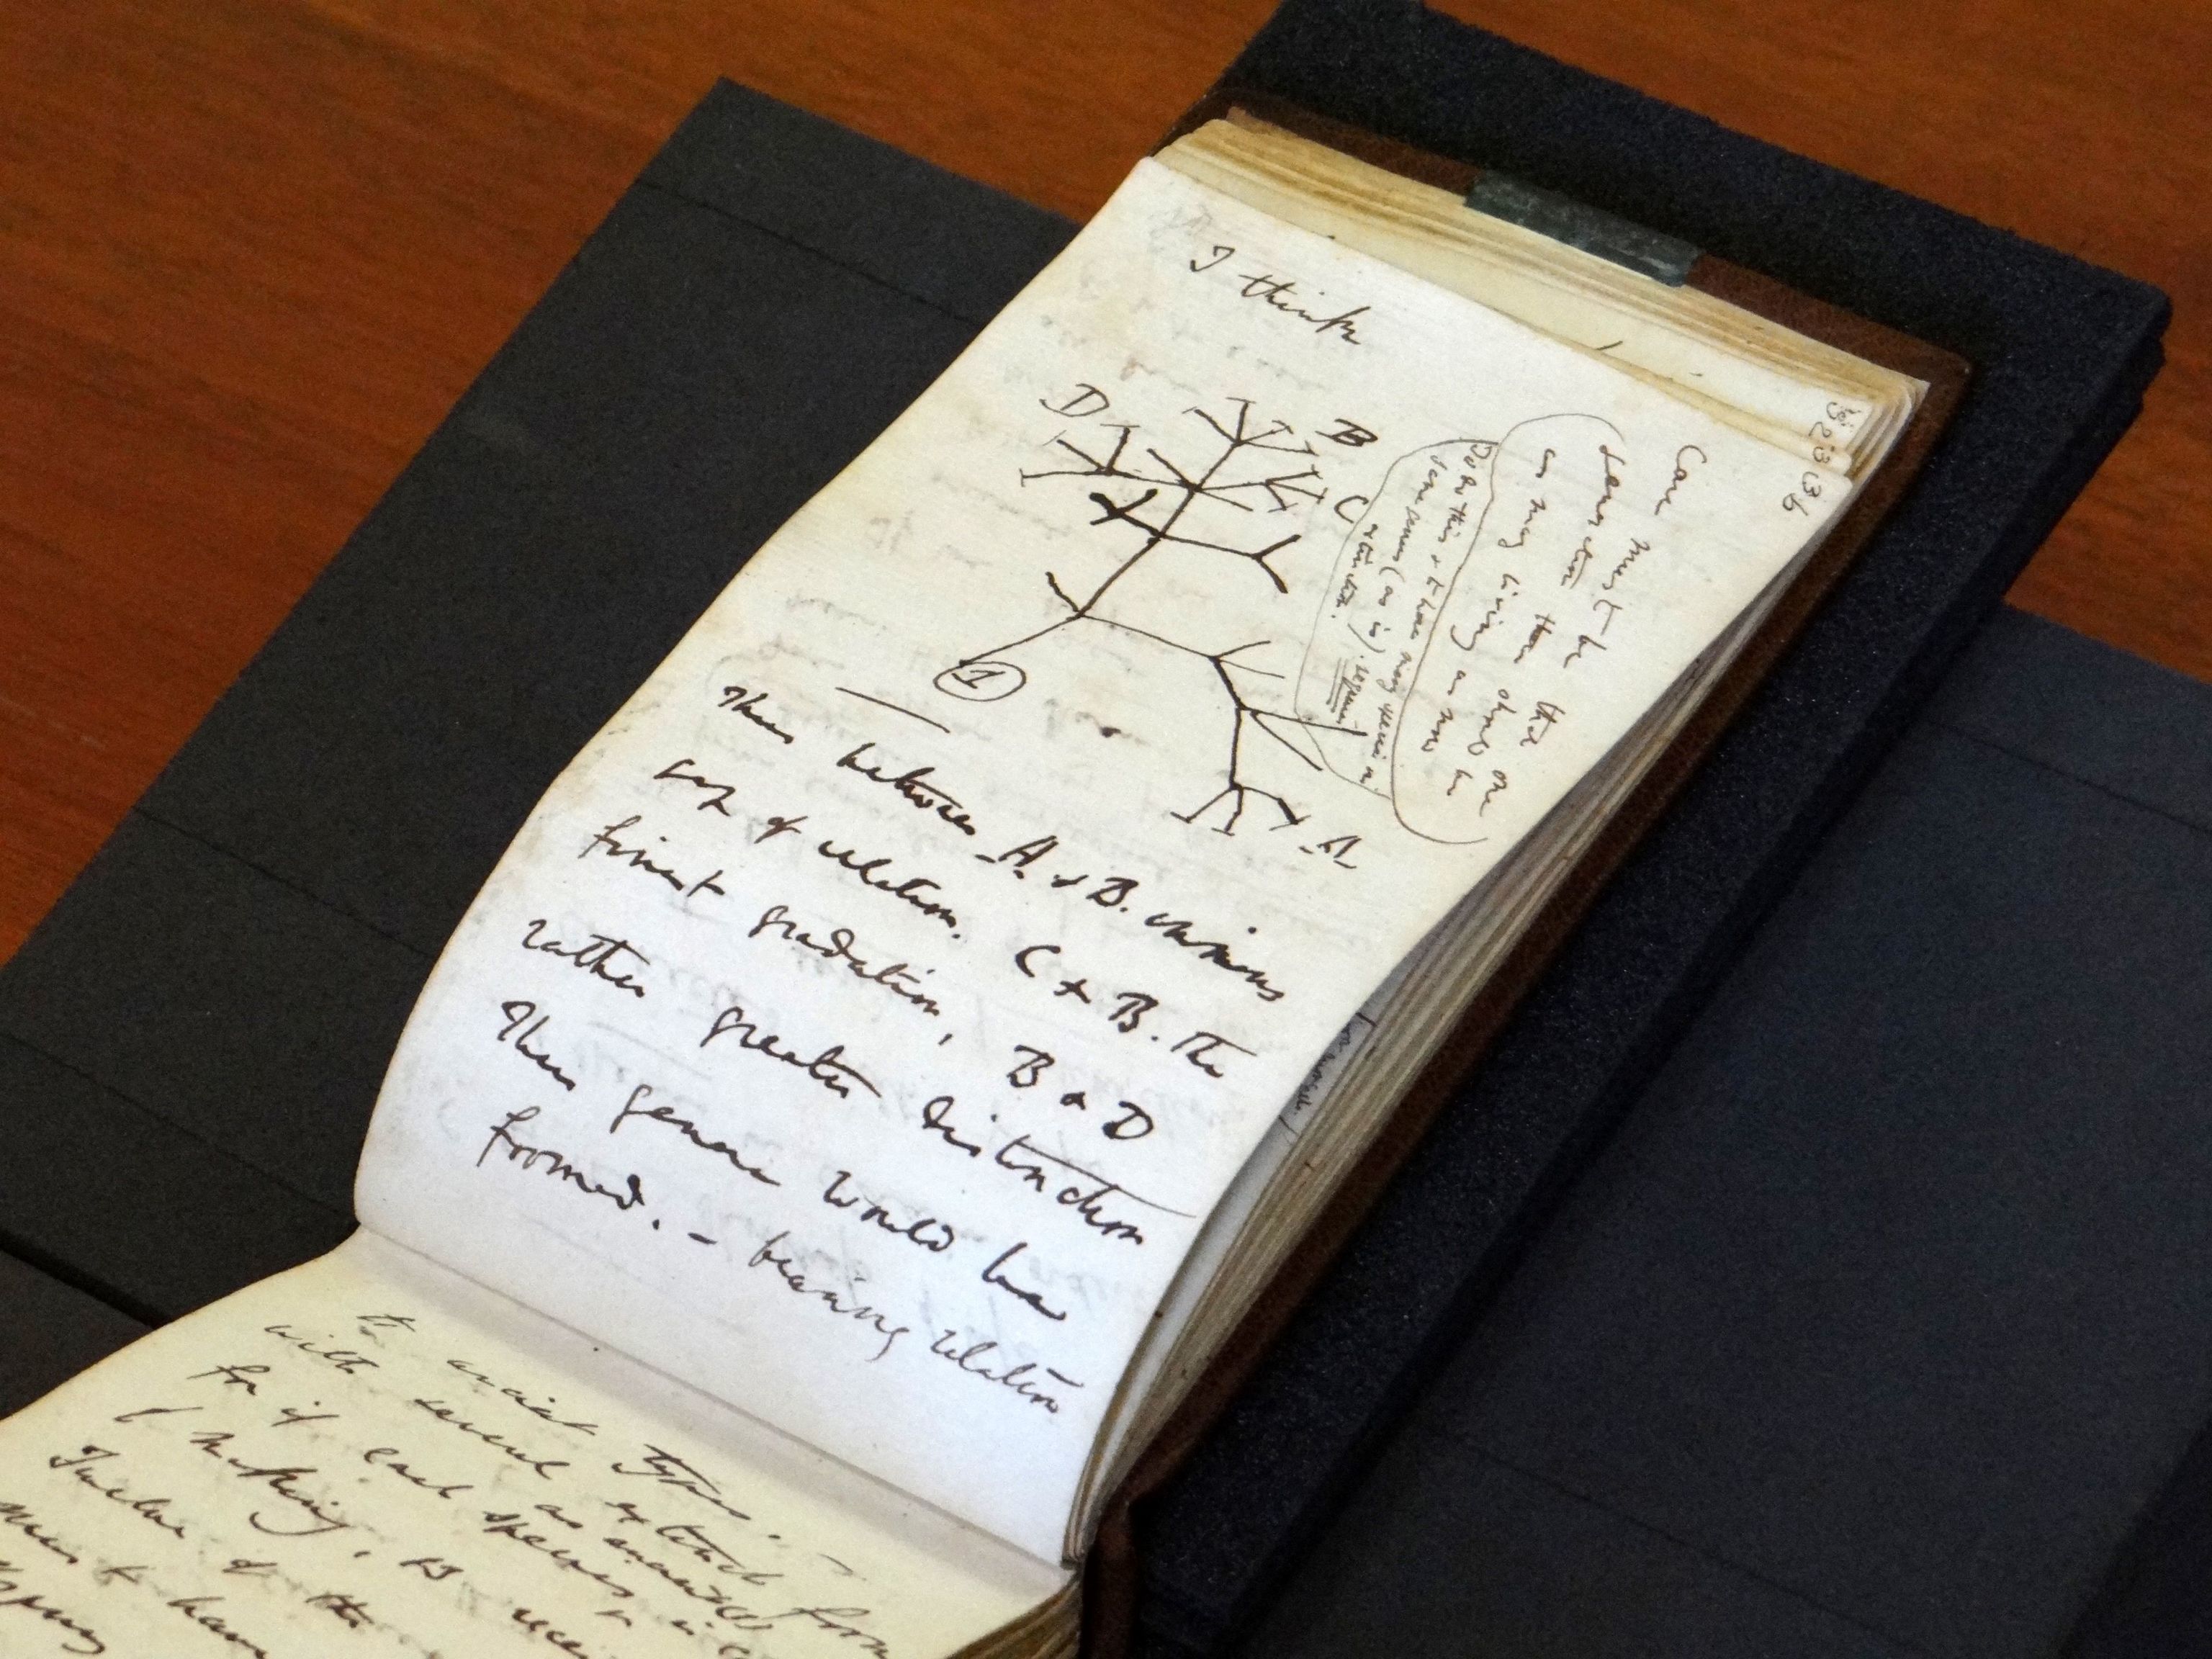 Imagen difundida por la Biblioteca de la Universidad de Cambridge el 5 de abril de 2022, muestra el boceto del "rbol de la Vida" devuelto en una pgina de uno de los cuadernos perdidos del cientfico britnico Charles Darwin. - Dos de los cuadernos de Charles Darwin que contienen sus ideas pioneras sobre la evolucin y su famoso boceto del "rbol de la Vida" han sido devueltos de forma annima despus de haber estado perdidos durante 21 aos, inform el martes la Biblioteca de la Universidad de Cambridge. Los preciados documentos fueron dejados en el suelo de una zona pblica de la biblioteca de la universidad britnica en una bolsa rosa de regalo, con una nota escrita a mquina deseando una feliz Pascua al bibliotecario.